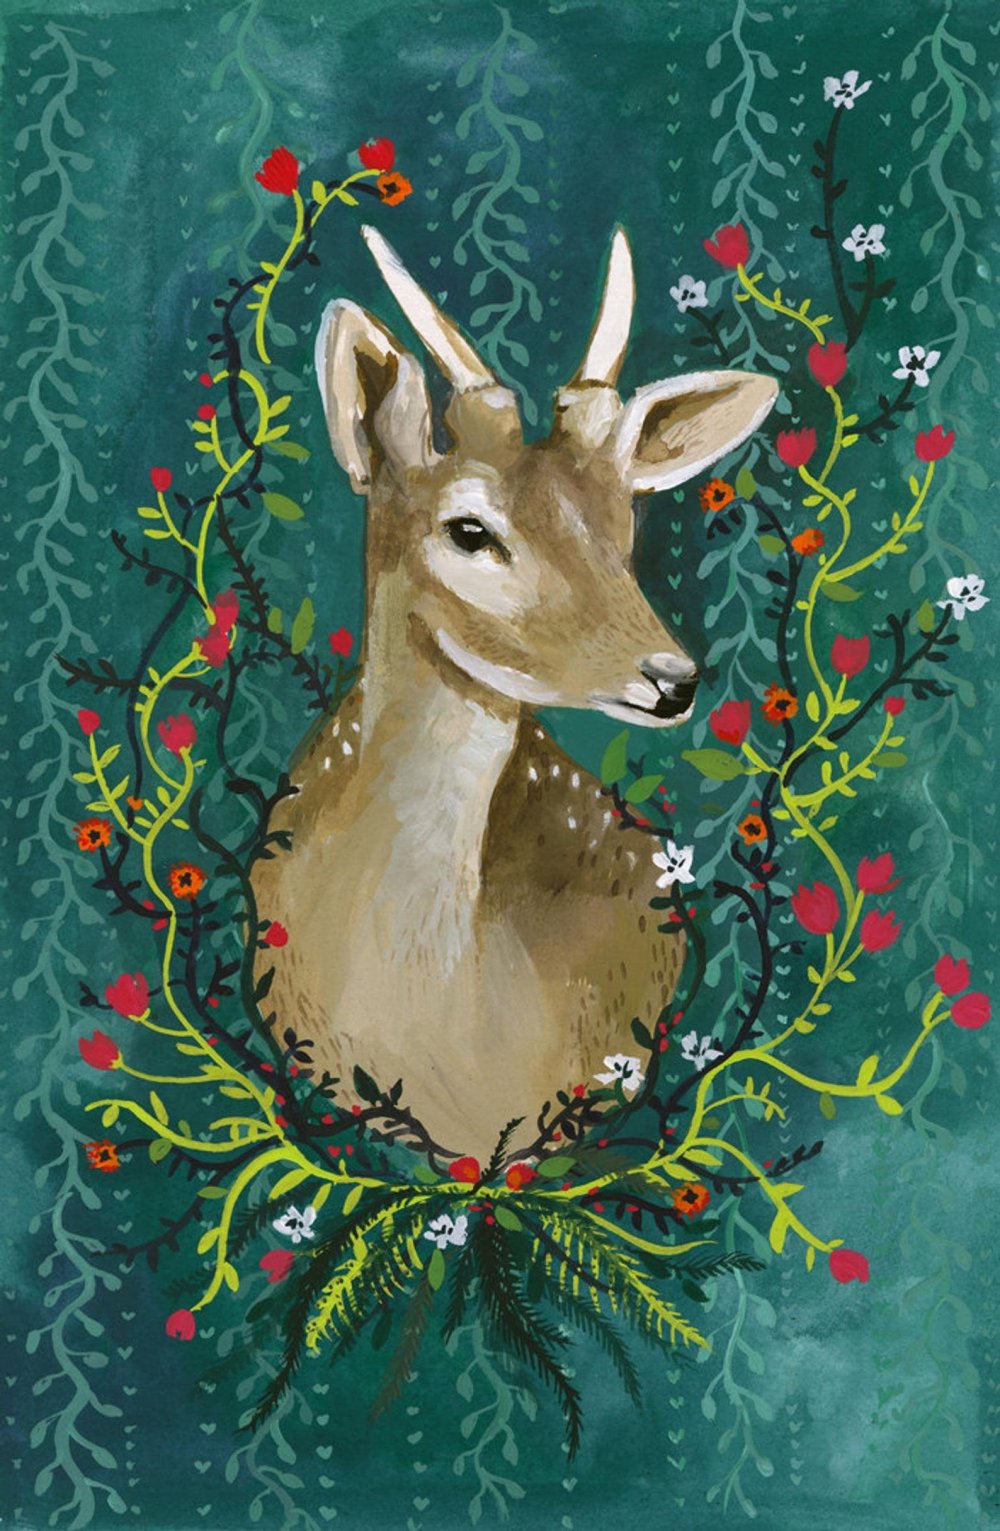 Новогодняя открытка с оленем